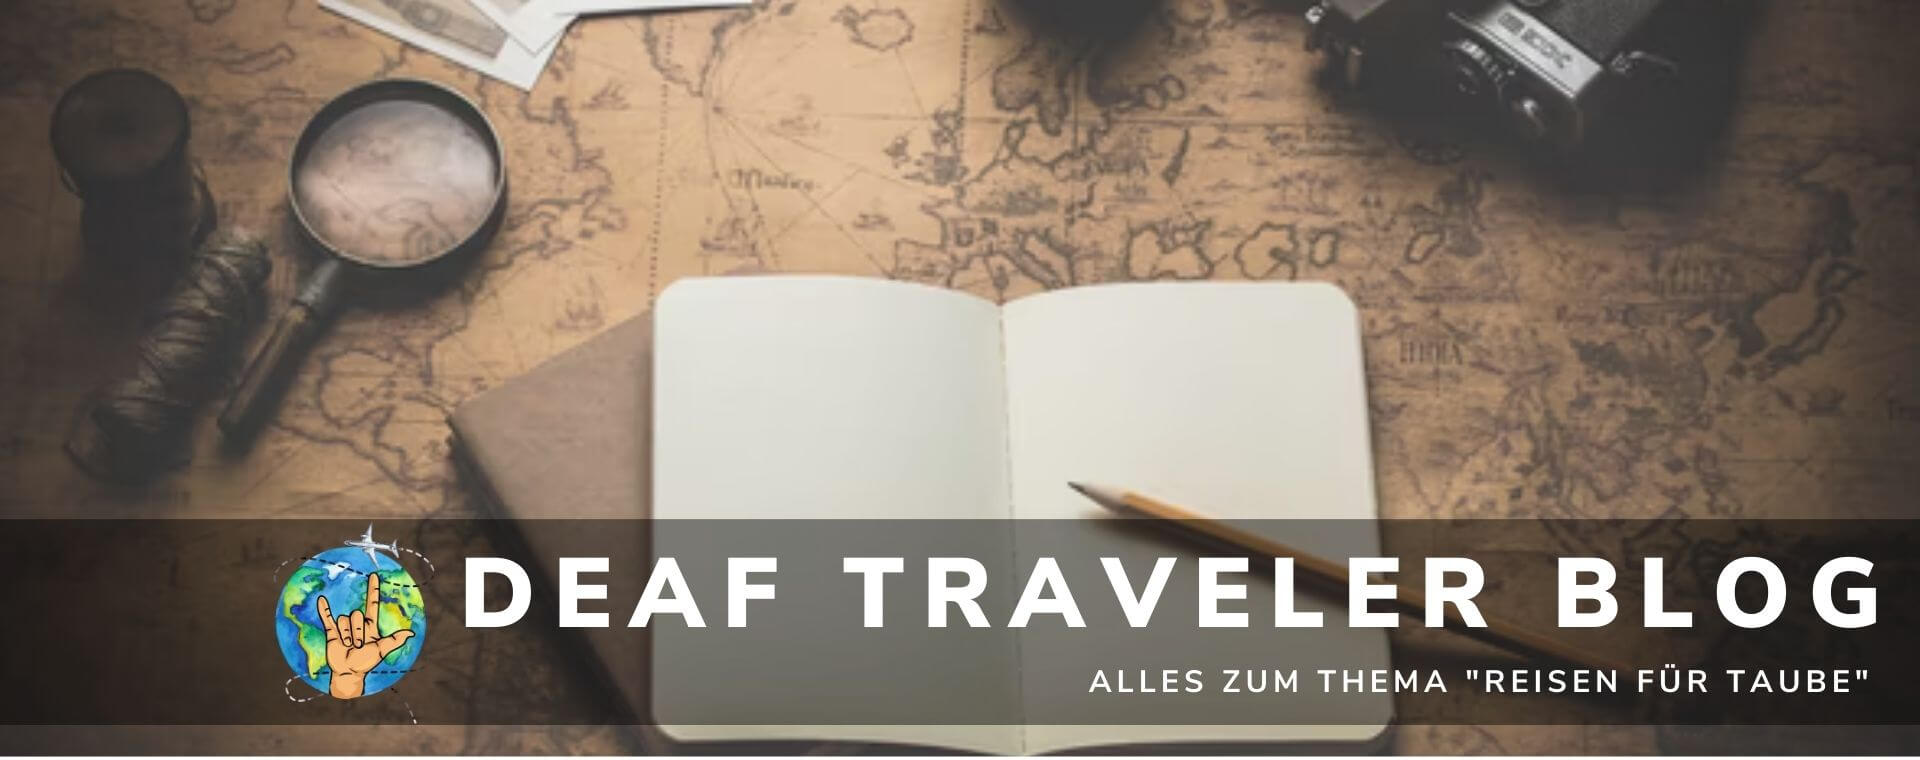 Deaf Traveler Blog